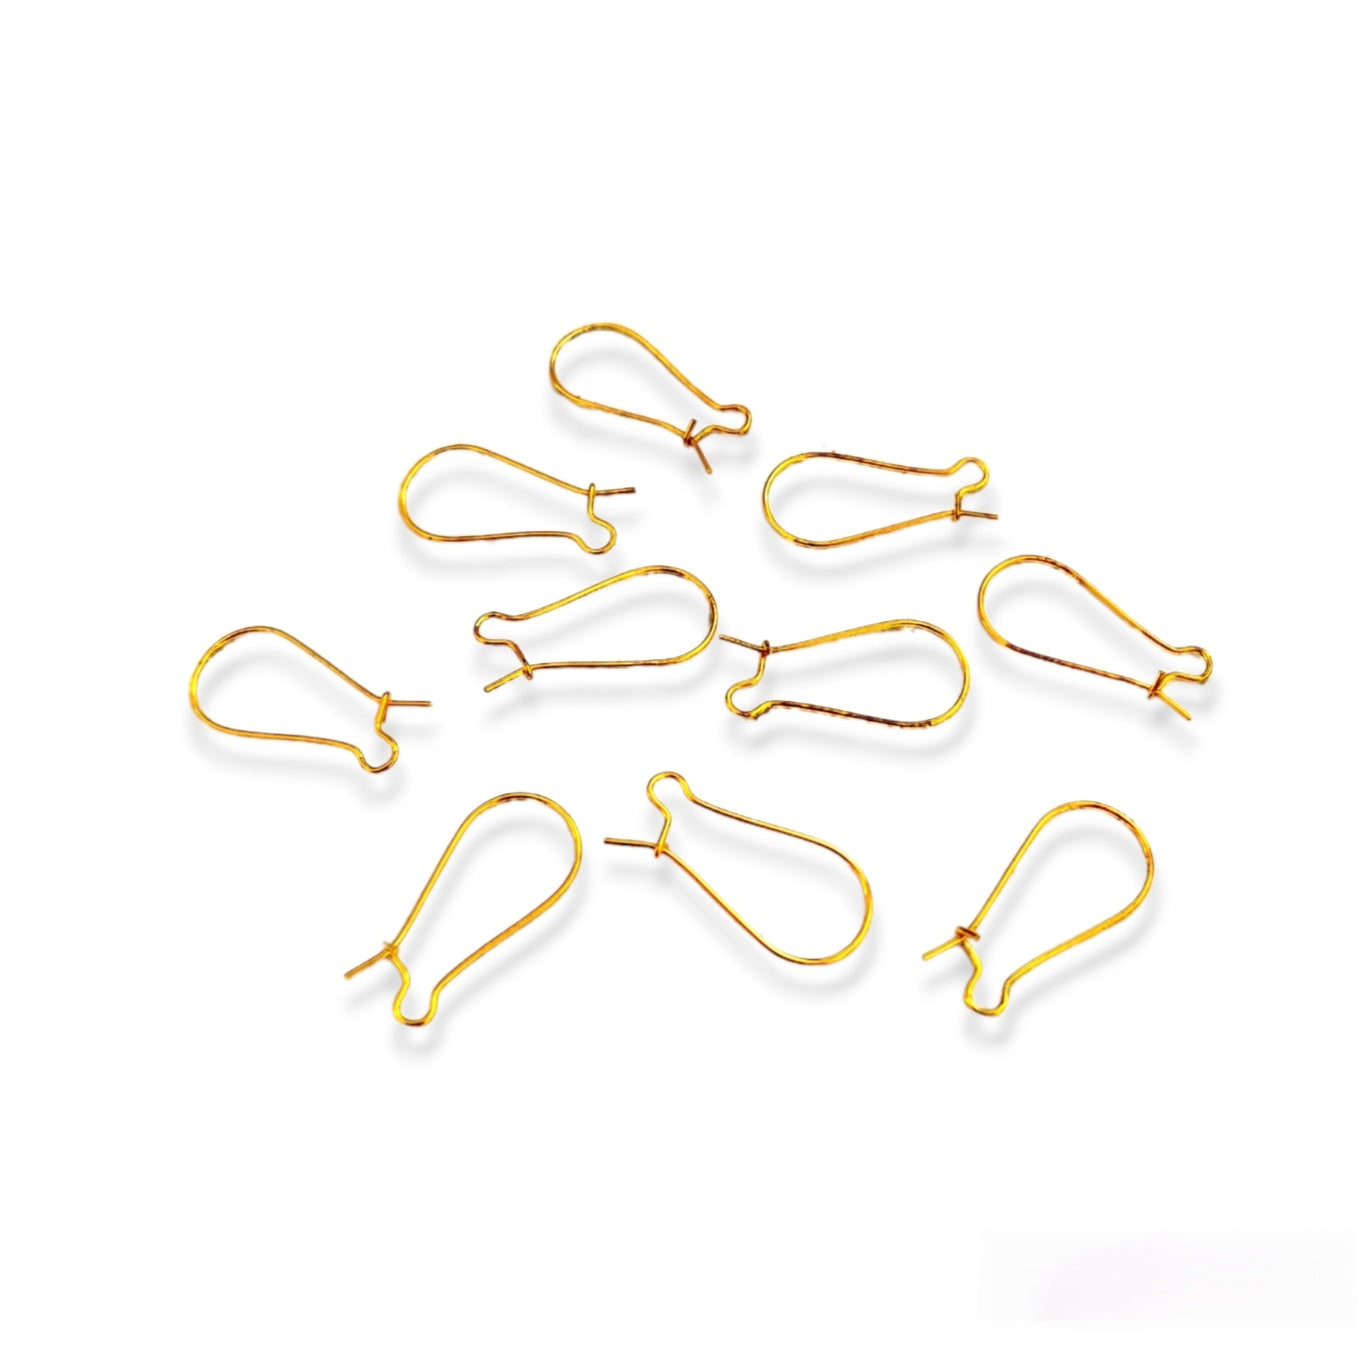 Golden Kidney Wire Earring Findings